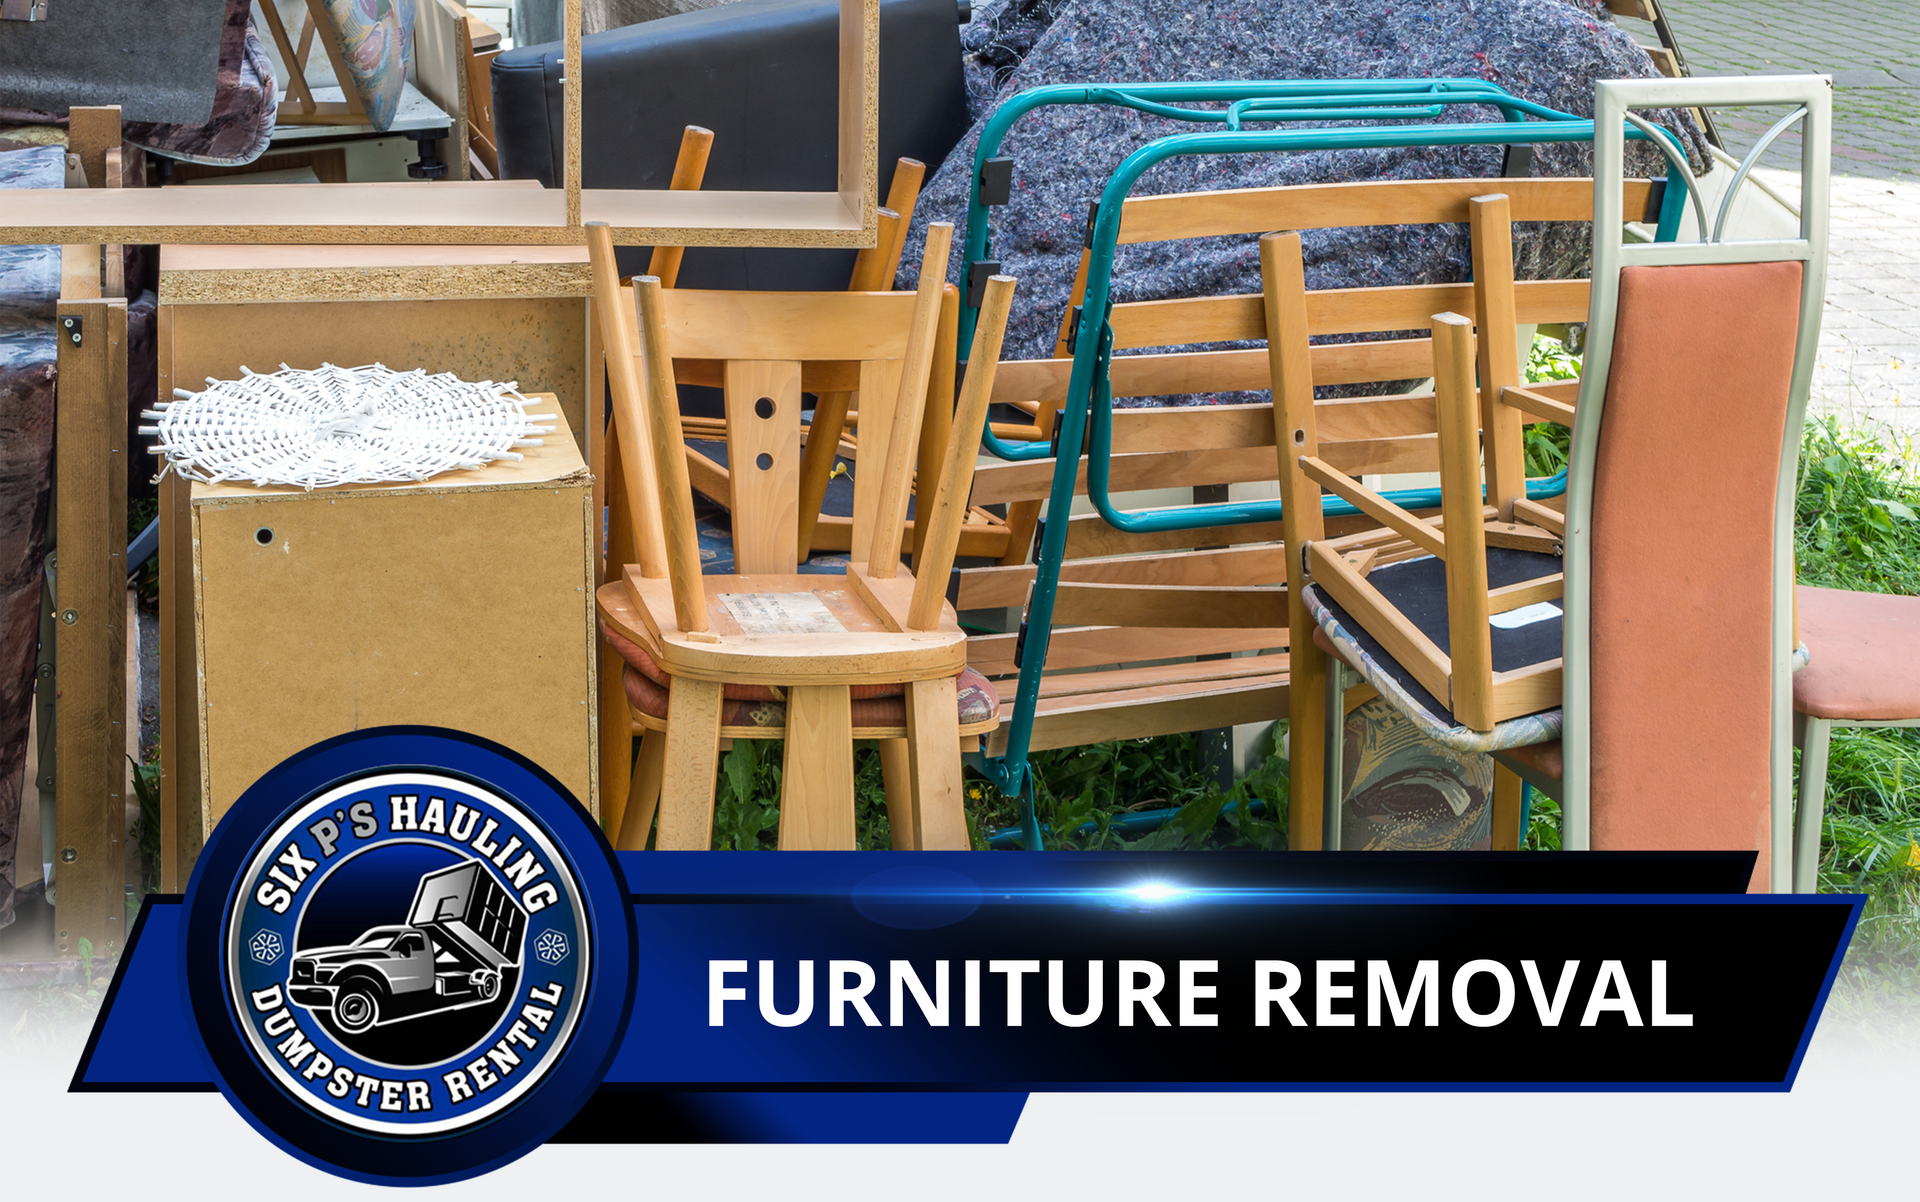 Furniture removal in La Verne, CA